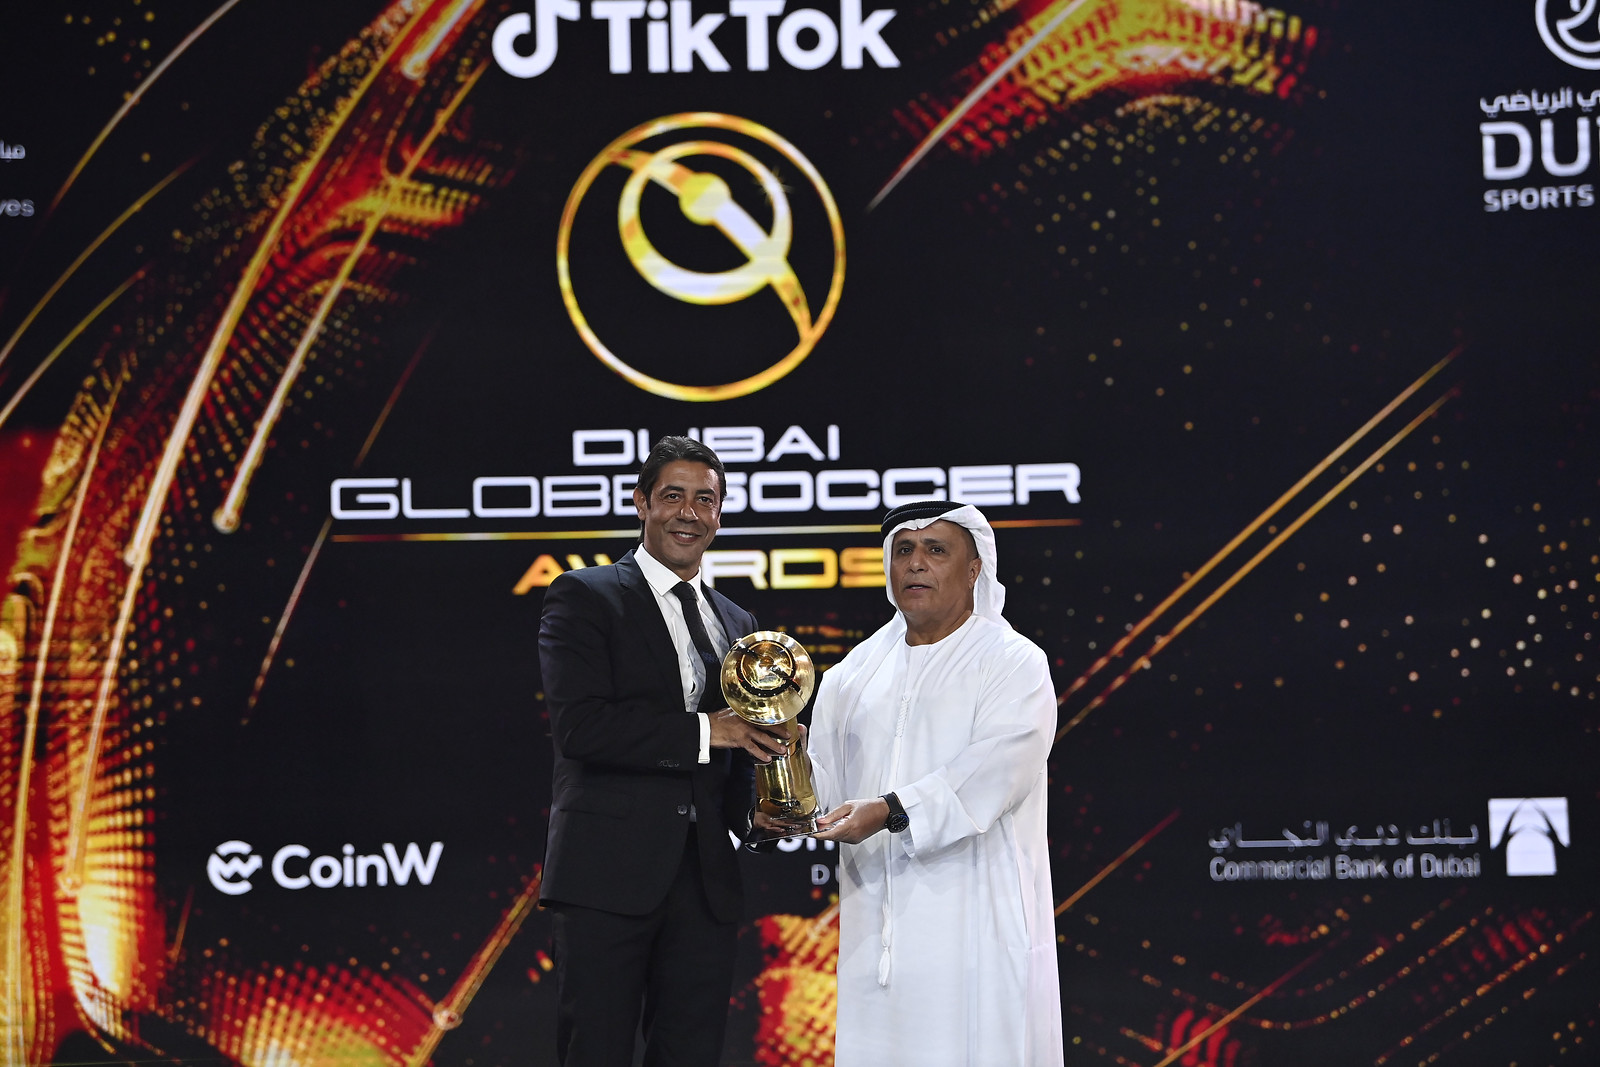 17ma edizione di Dubai International Sports Conference - Globe Soccer Awards 2022